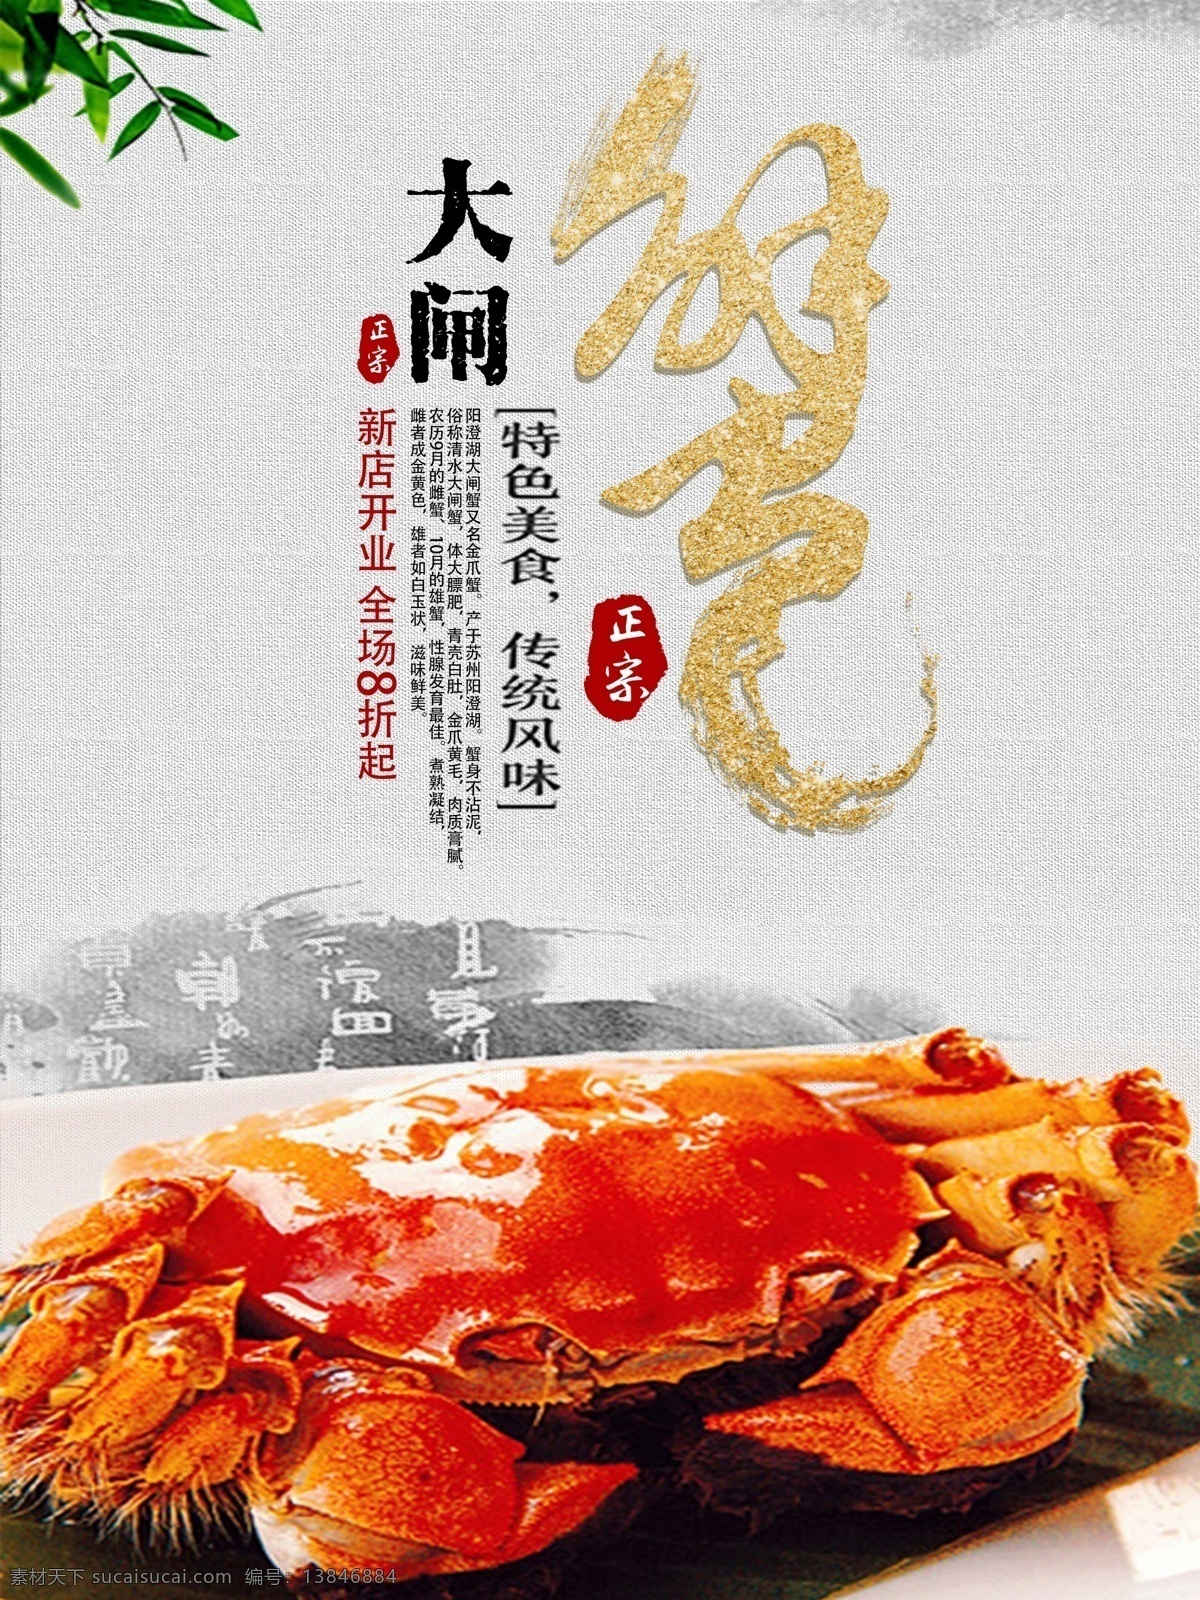 中国 风 特色 美食 传统 风味 大闸蟹 海报 中国风 蟹 促销海报 螃蟹 特色美食 中国风美食